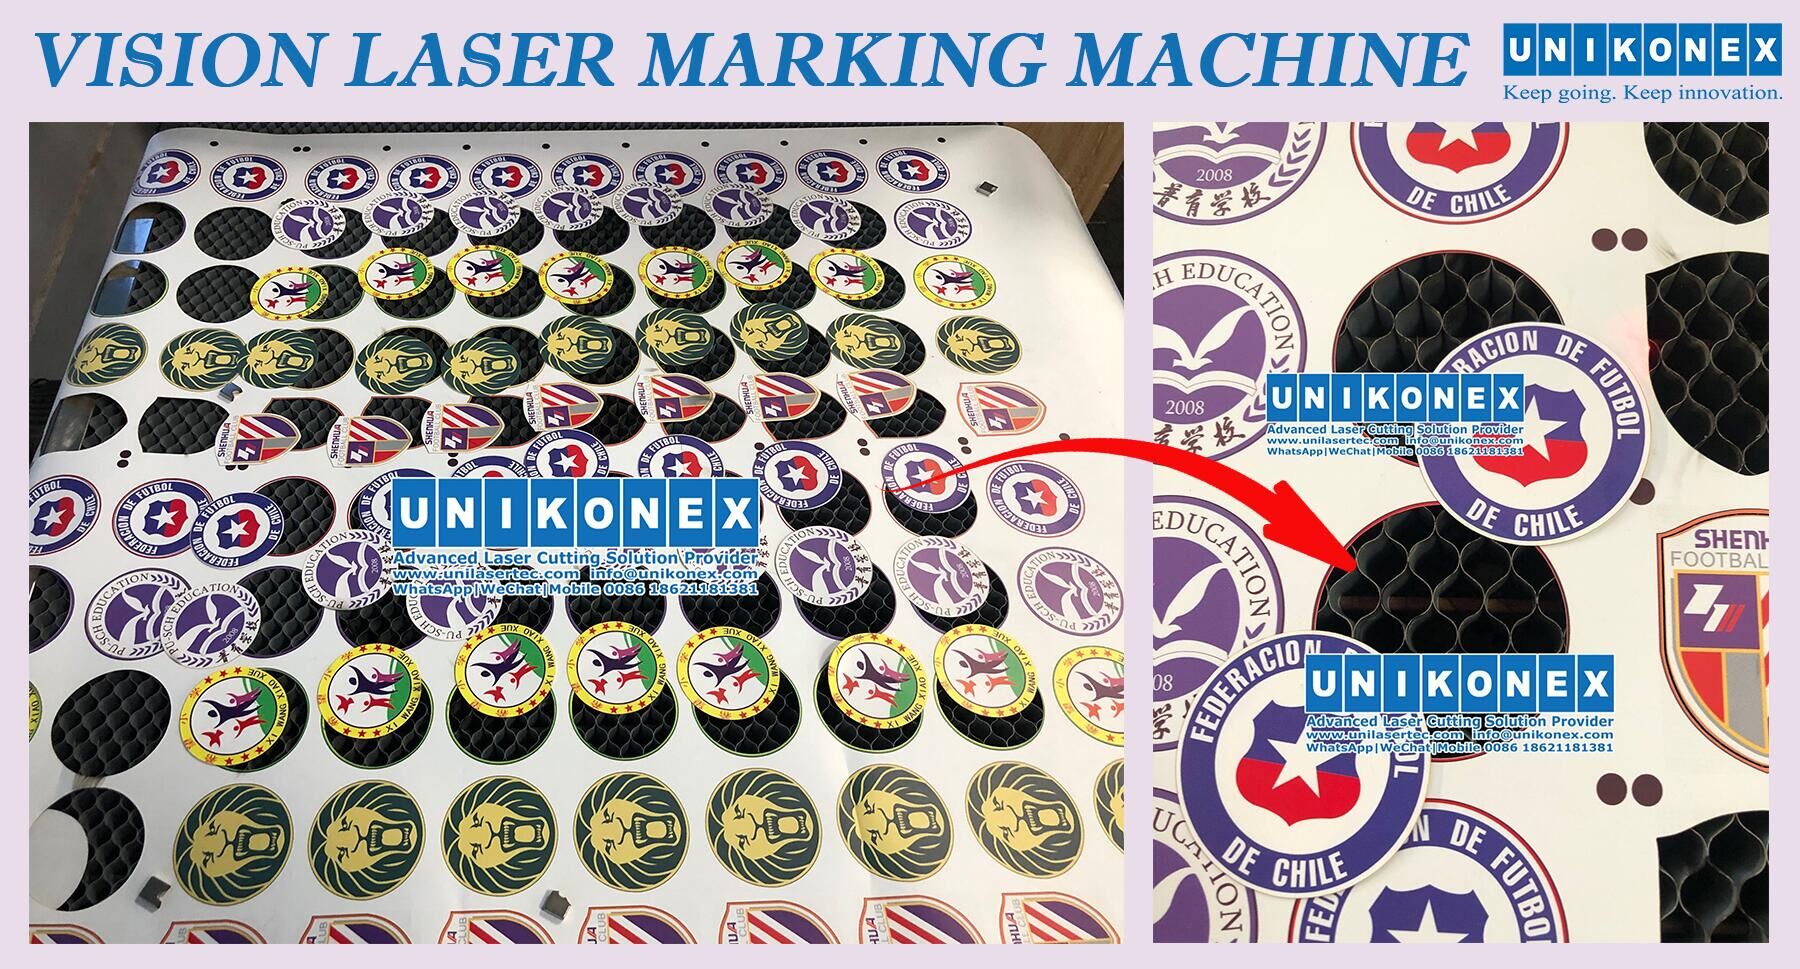 Печать виниловых логотипов с помощью лазерной маркировочной машины Vision